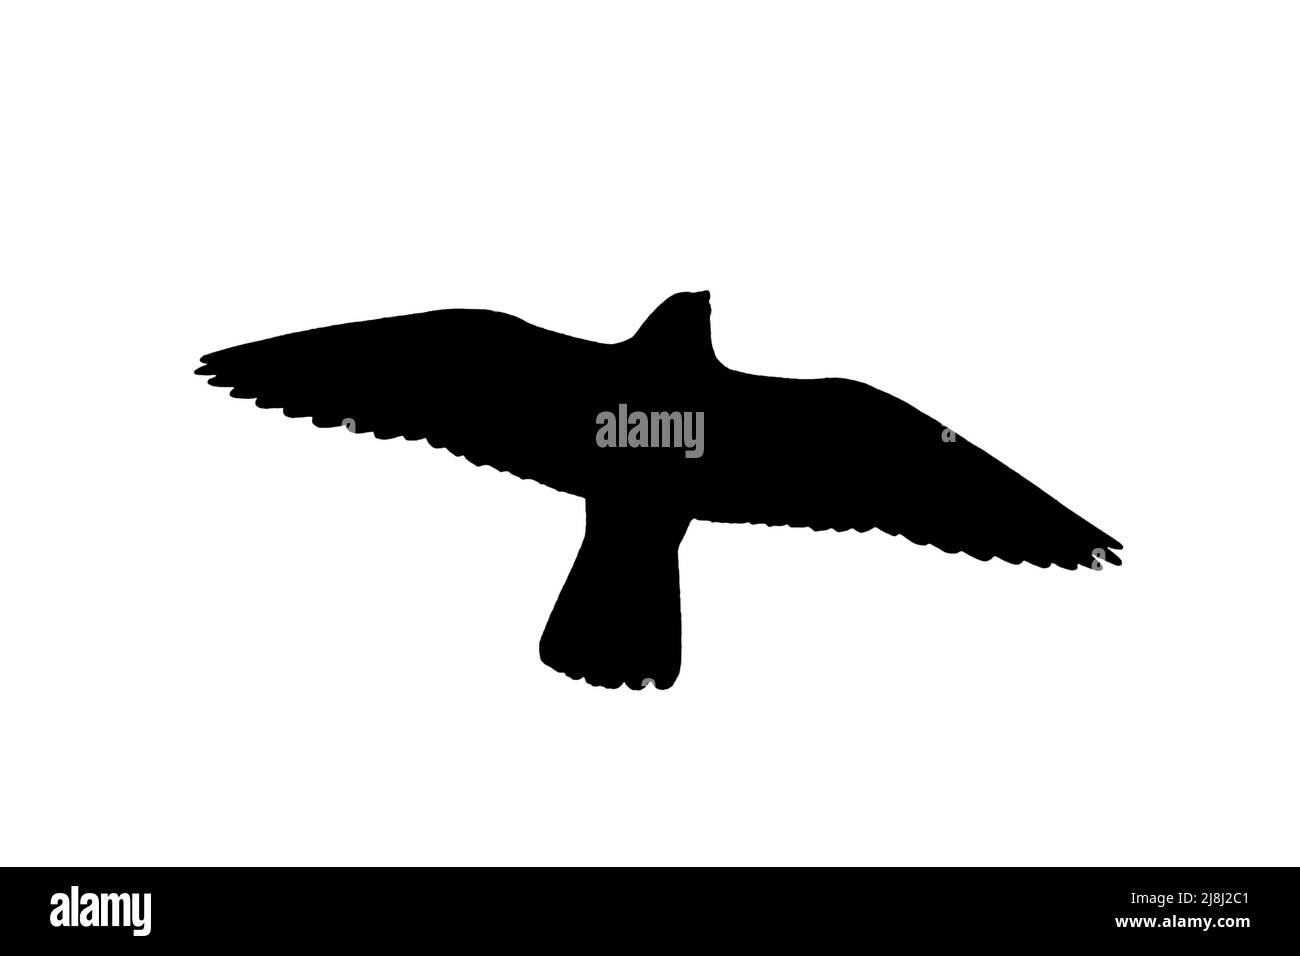 Silhouette du faucon pèlerin (Falco peregrinus) en vol sur fond blanc pour montrer les formes des ailes, de la tête et de la queue Banque D'Images